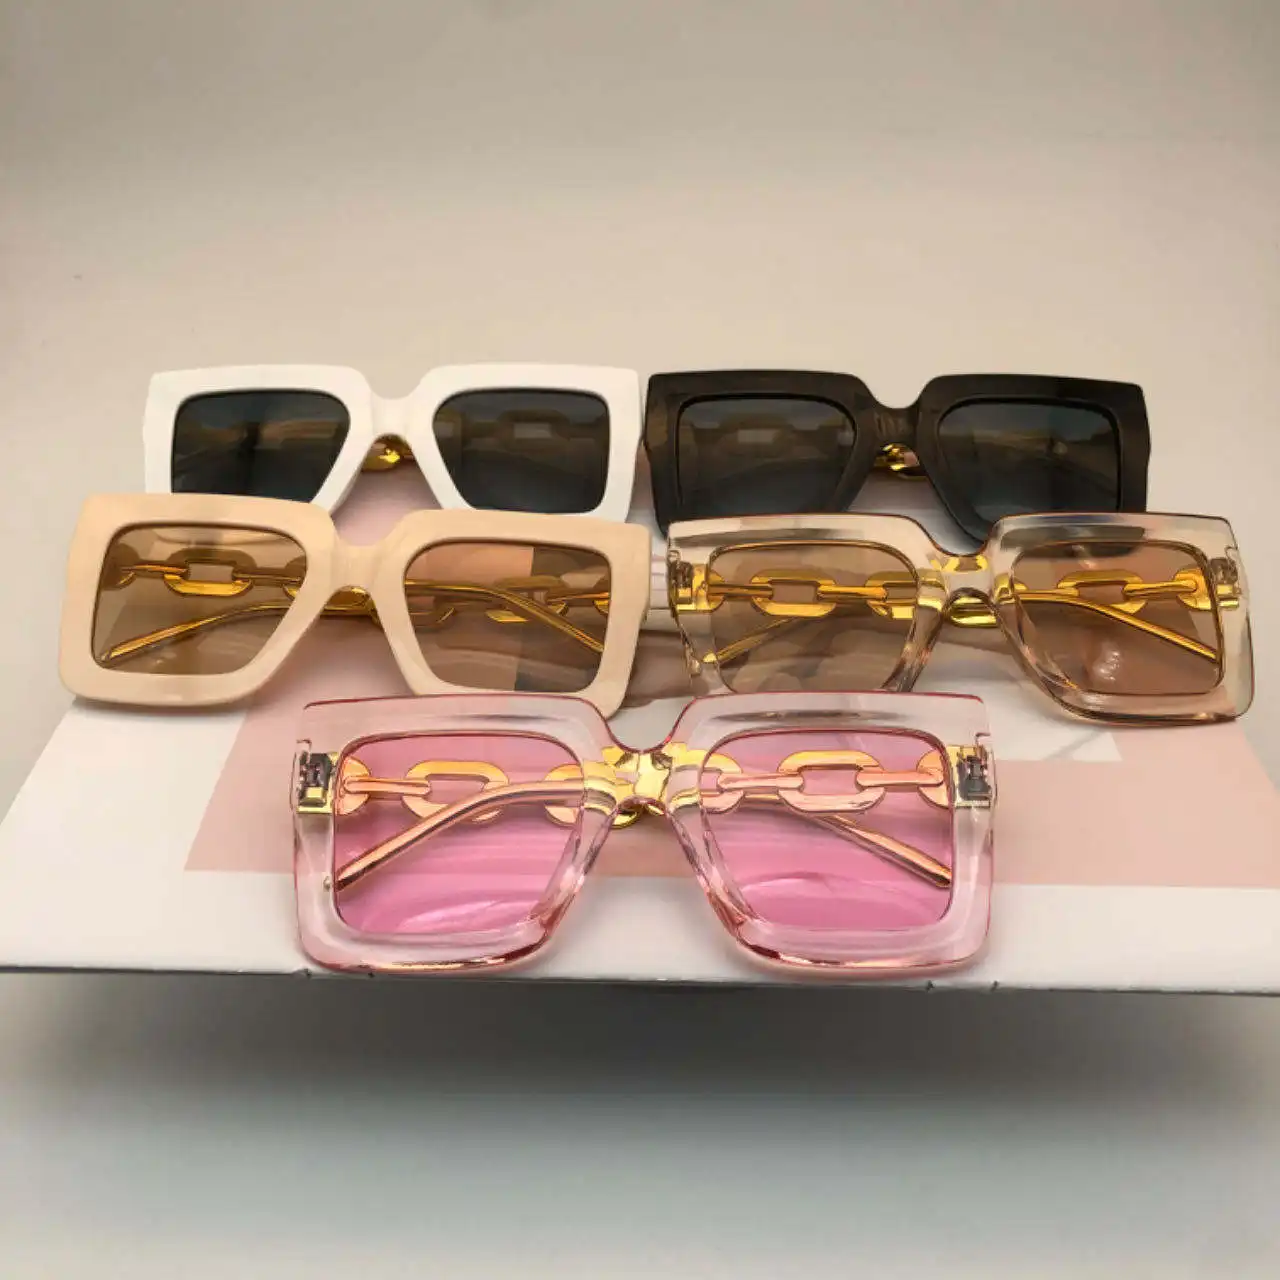 Mode Persönlichkeit klassische retro-Sonnenbrille große quadratische Rahmen-Sonnenbrille für Damen